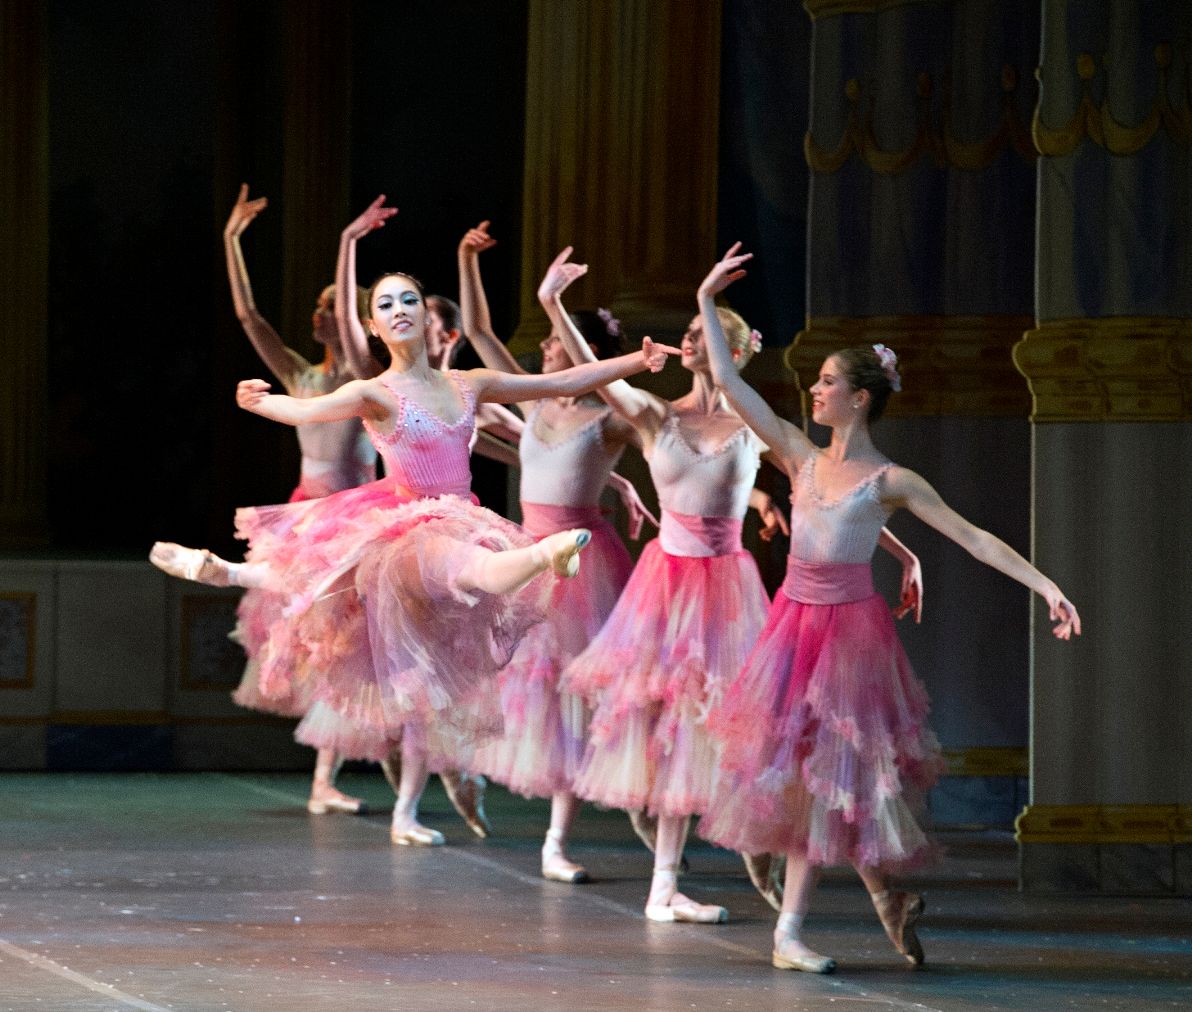 Boston Ballet Nutcracker by Gene Schiavone